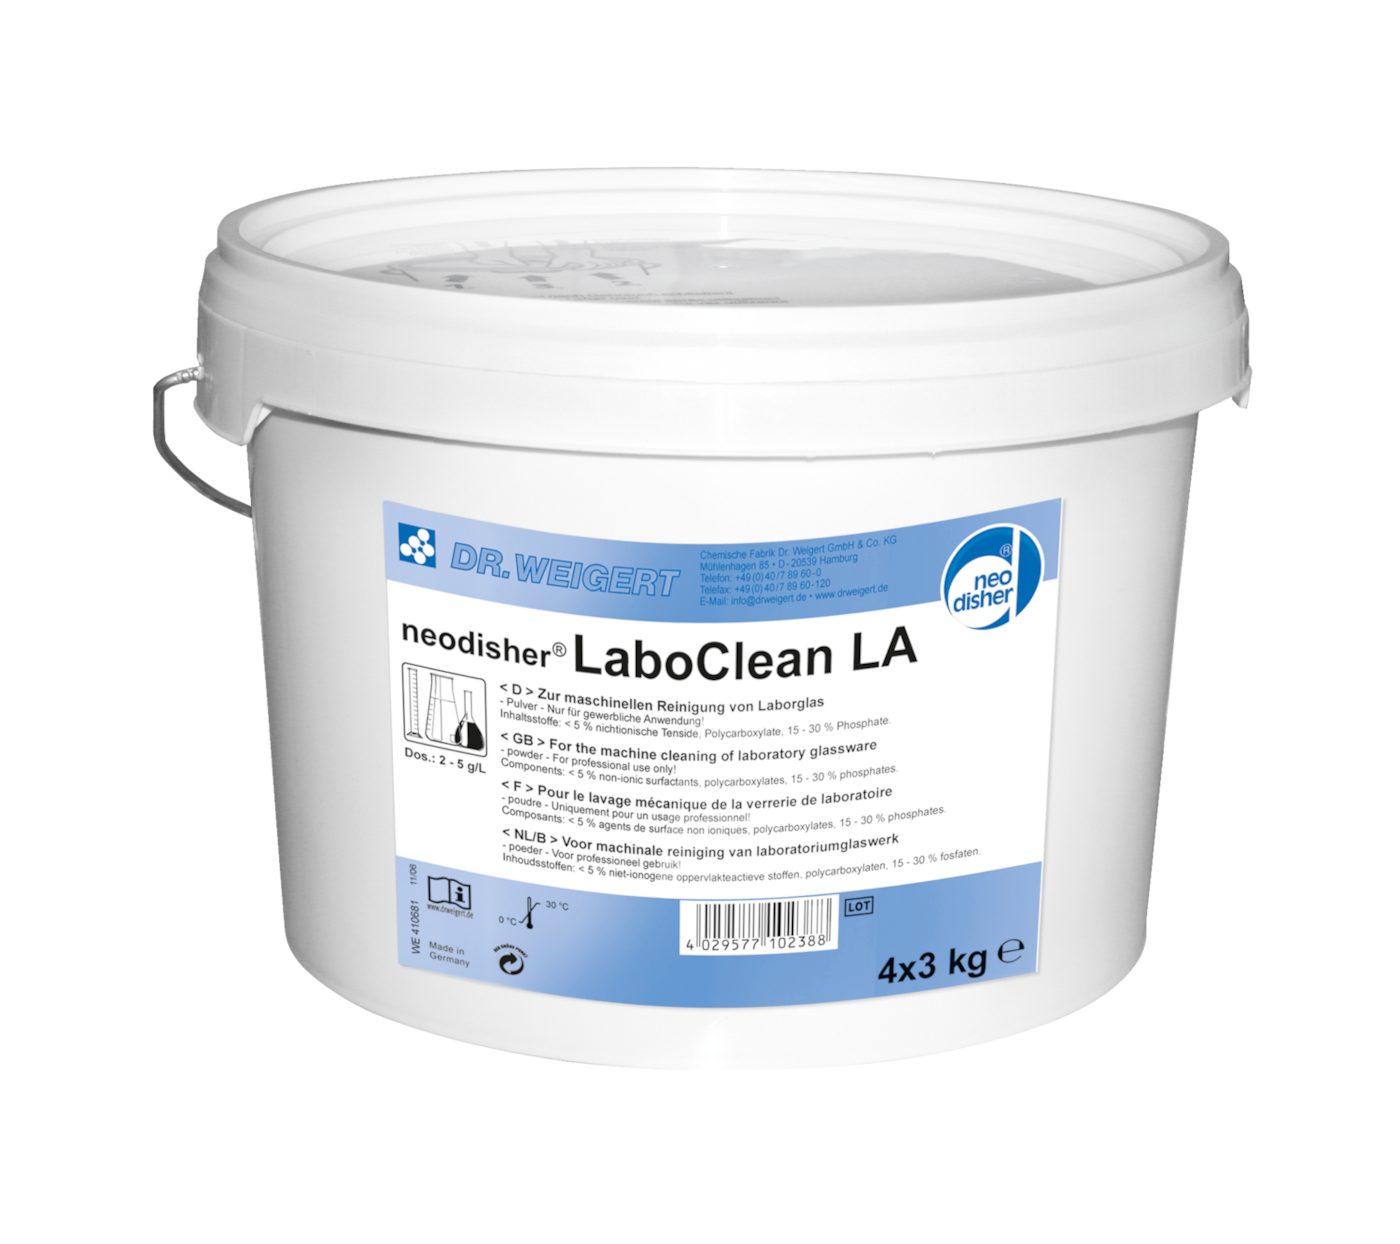 Neodisher LaboClean LA  Alkalisk rengøringsmiddel til specialopvaskemaskiner, 4x3 kg produktfoto Front View ZOOM